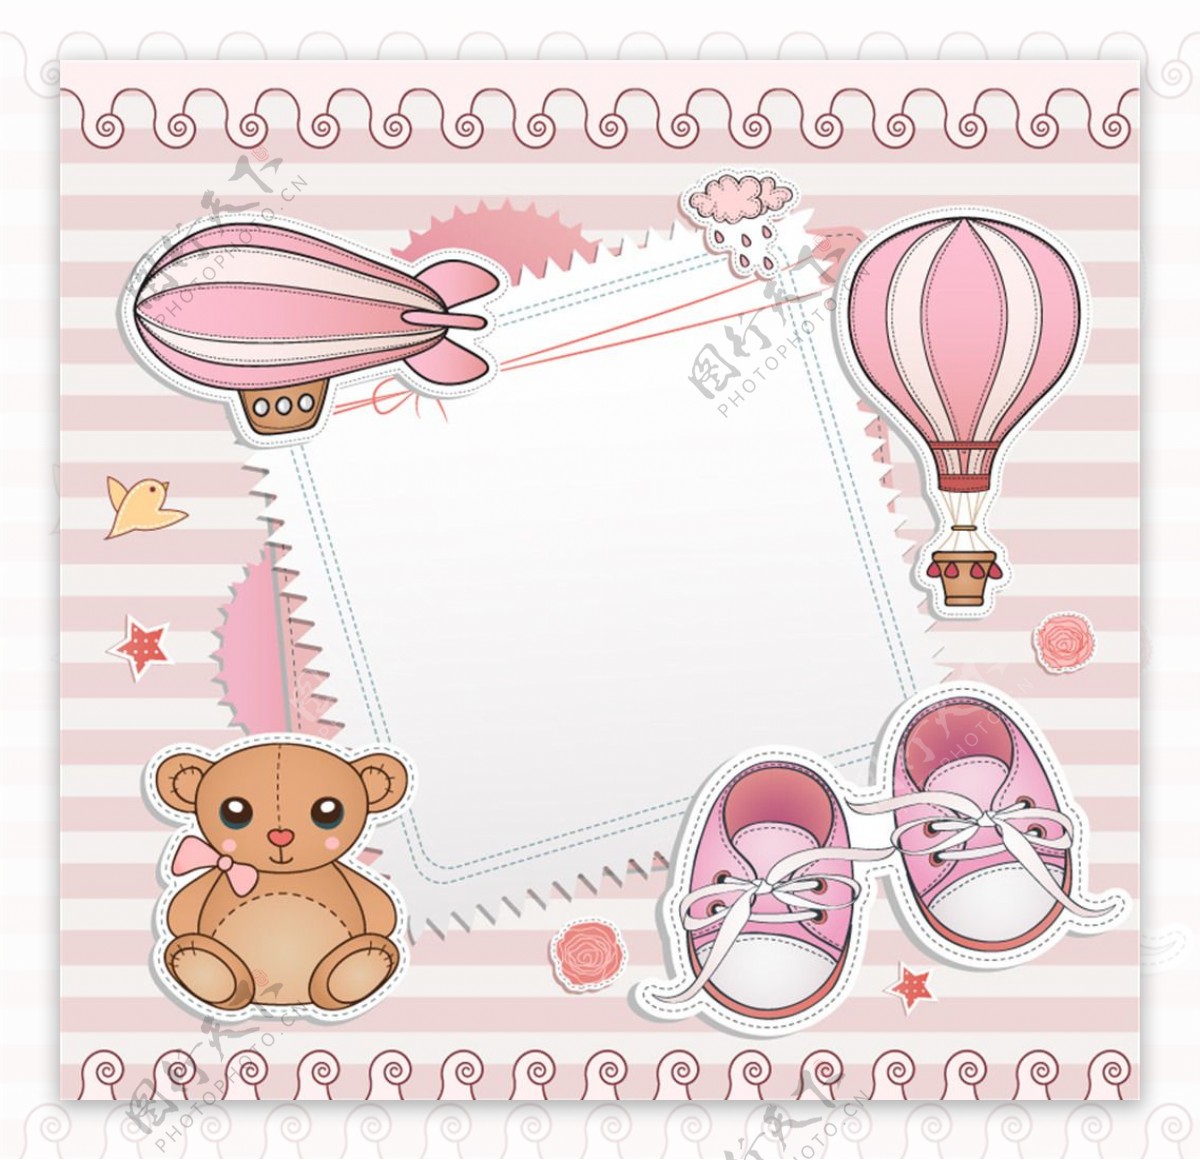 粉色婴儿元素卡片矢量素材